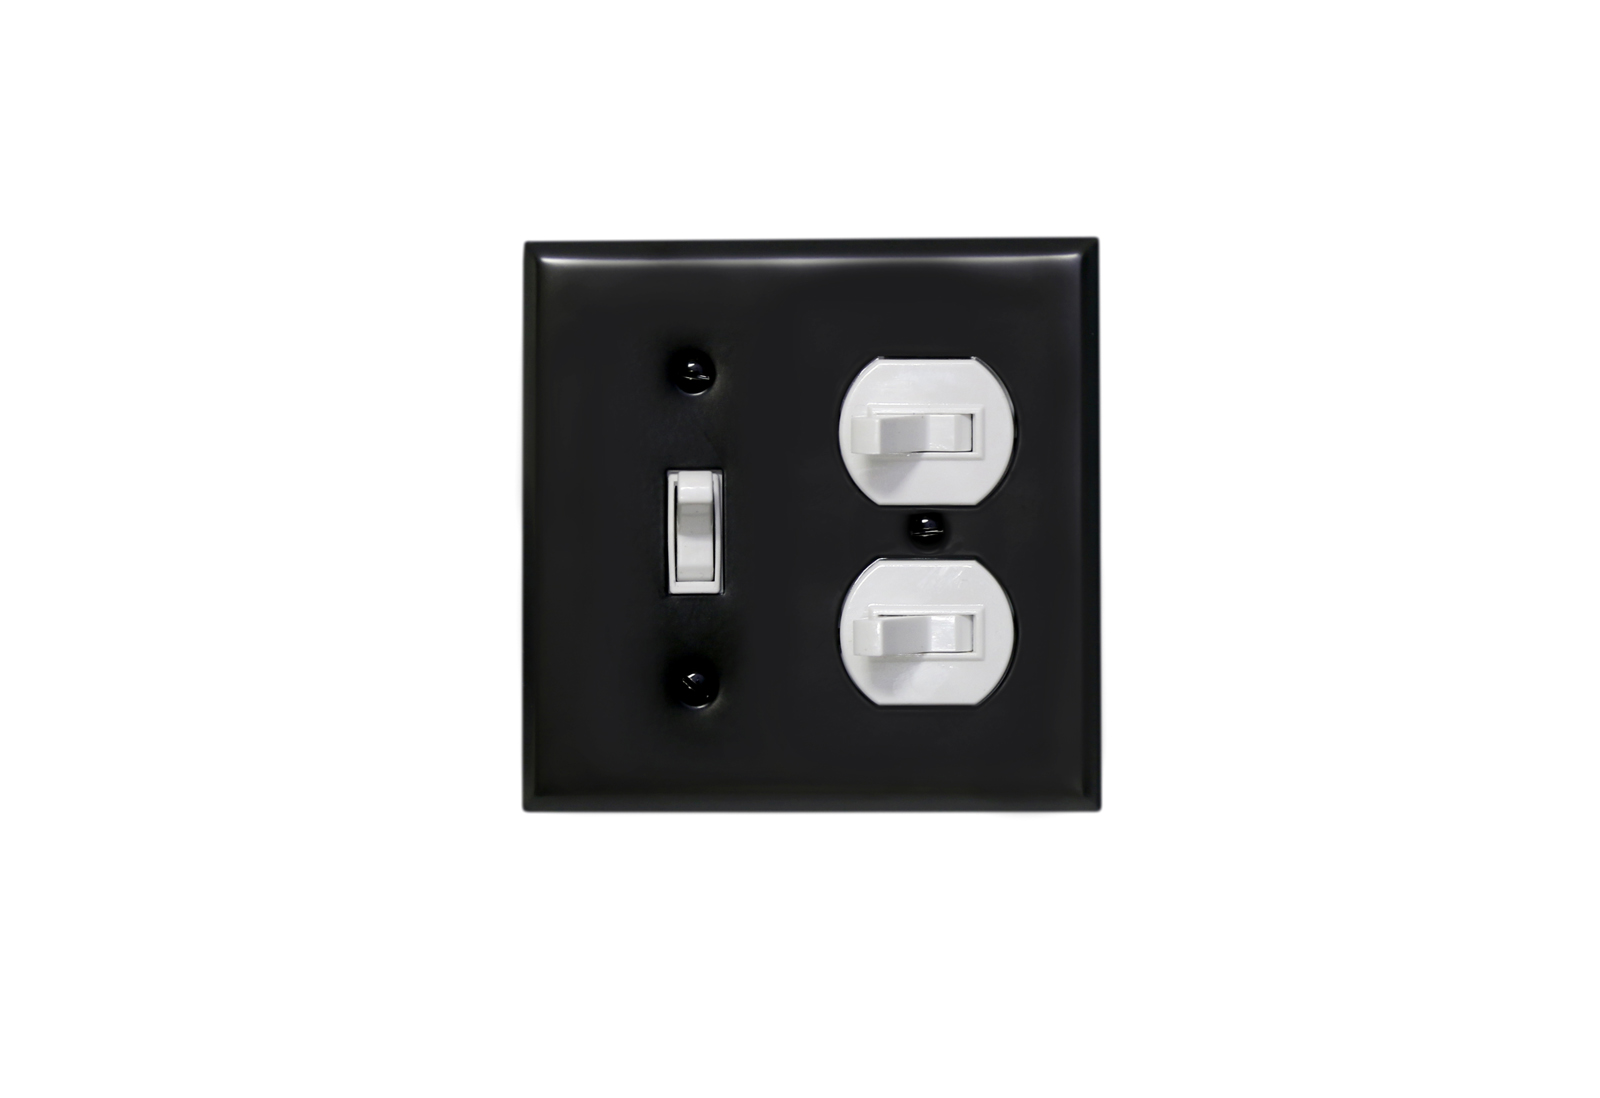 アメリカンスイッチ プレート1-2口 (ST-BK) LT-PS008-31-G141 白いスイッチでも使用可能ですが、見栄えとしては黒がおすすめです